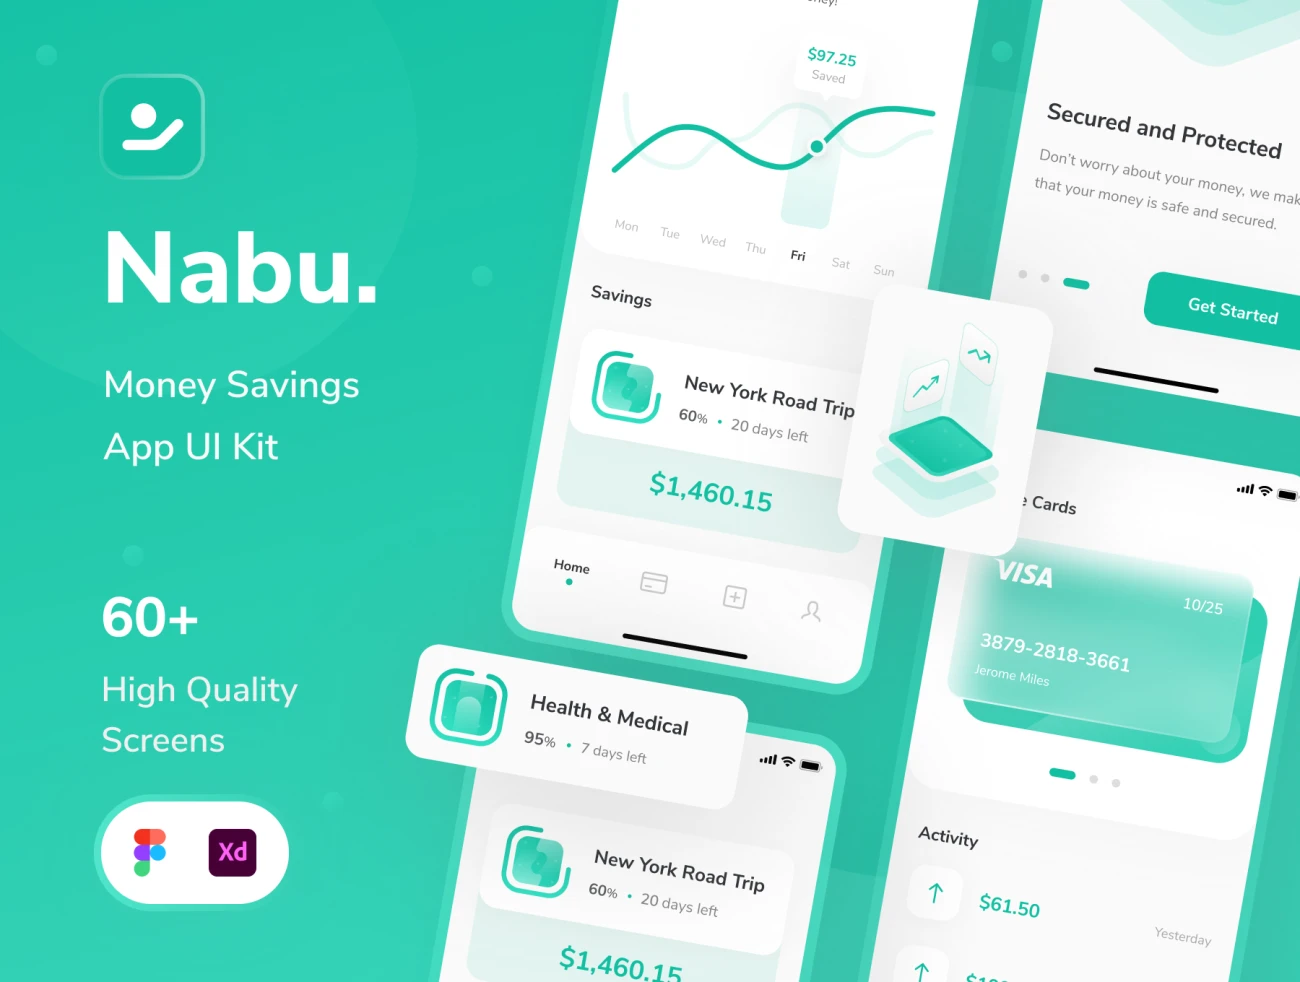 Nabu - Money Savings App UI KIt 60屏高品质iOS电子钱包预算控制金融理财手机应用设计套件-UI/UX、ui套件、应用、数据可视化-仪表板、电子钱包-到位啦UI